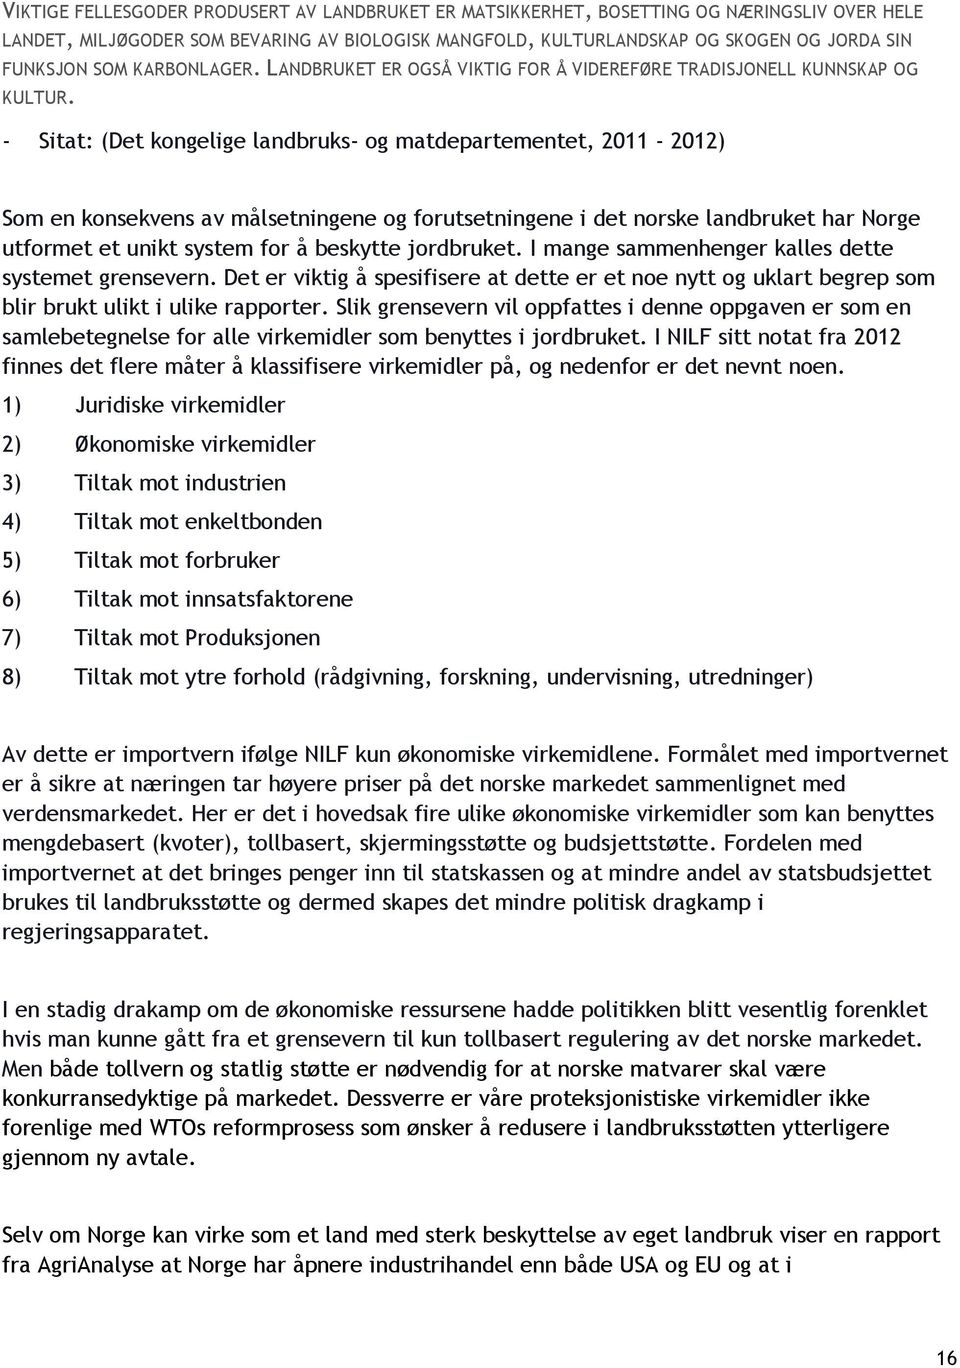 - Sitat: (Det kongelige landbruks- og matdepartementet, 2011-2012) Som en konsekvens av målsetningene og forutsetningene i det norske landbruket har Norge utformet et unikt system for å beskytte